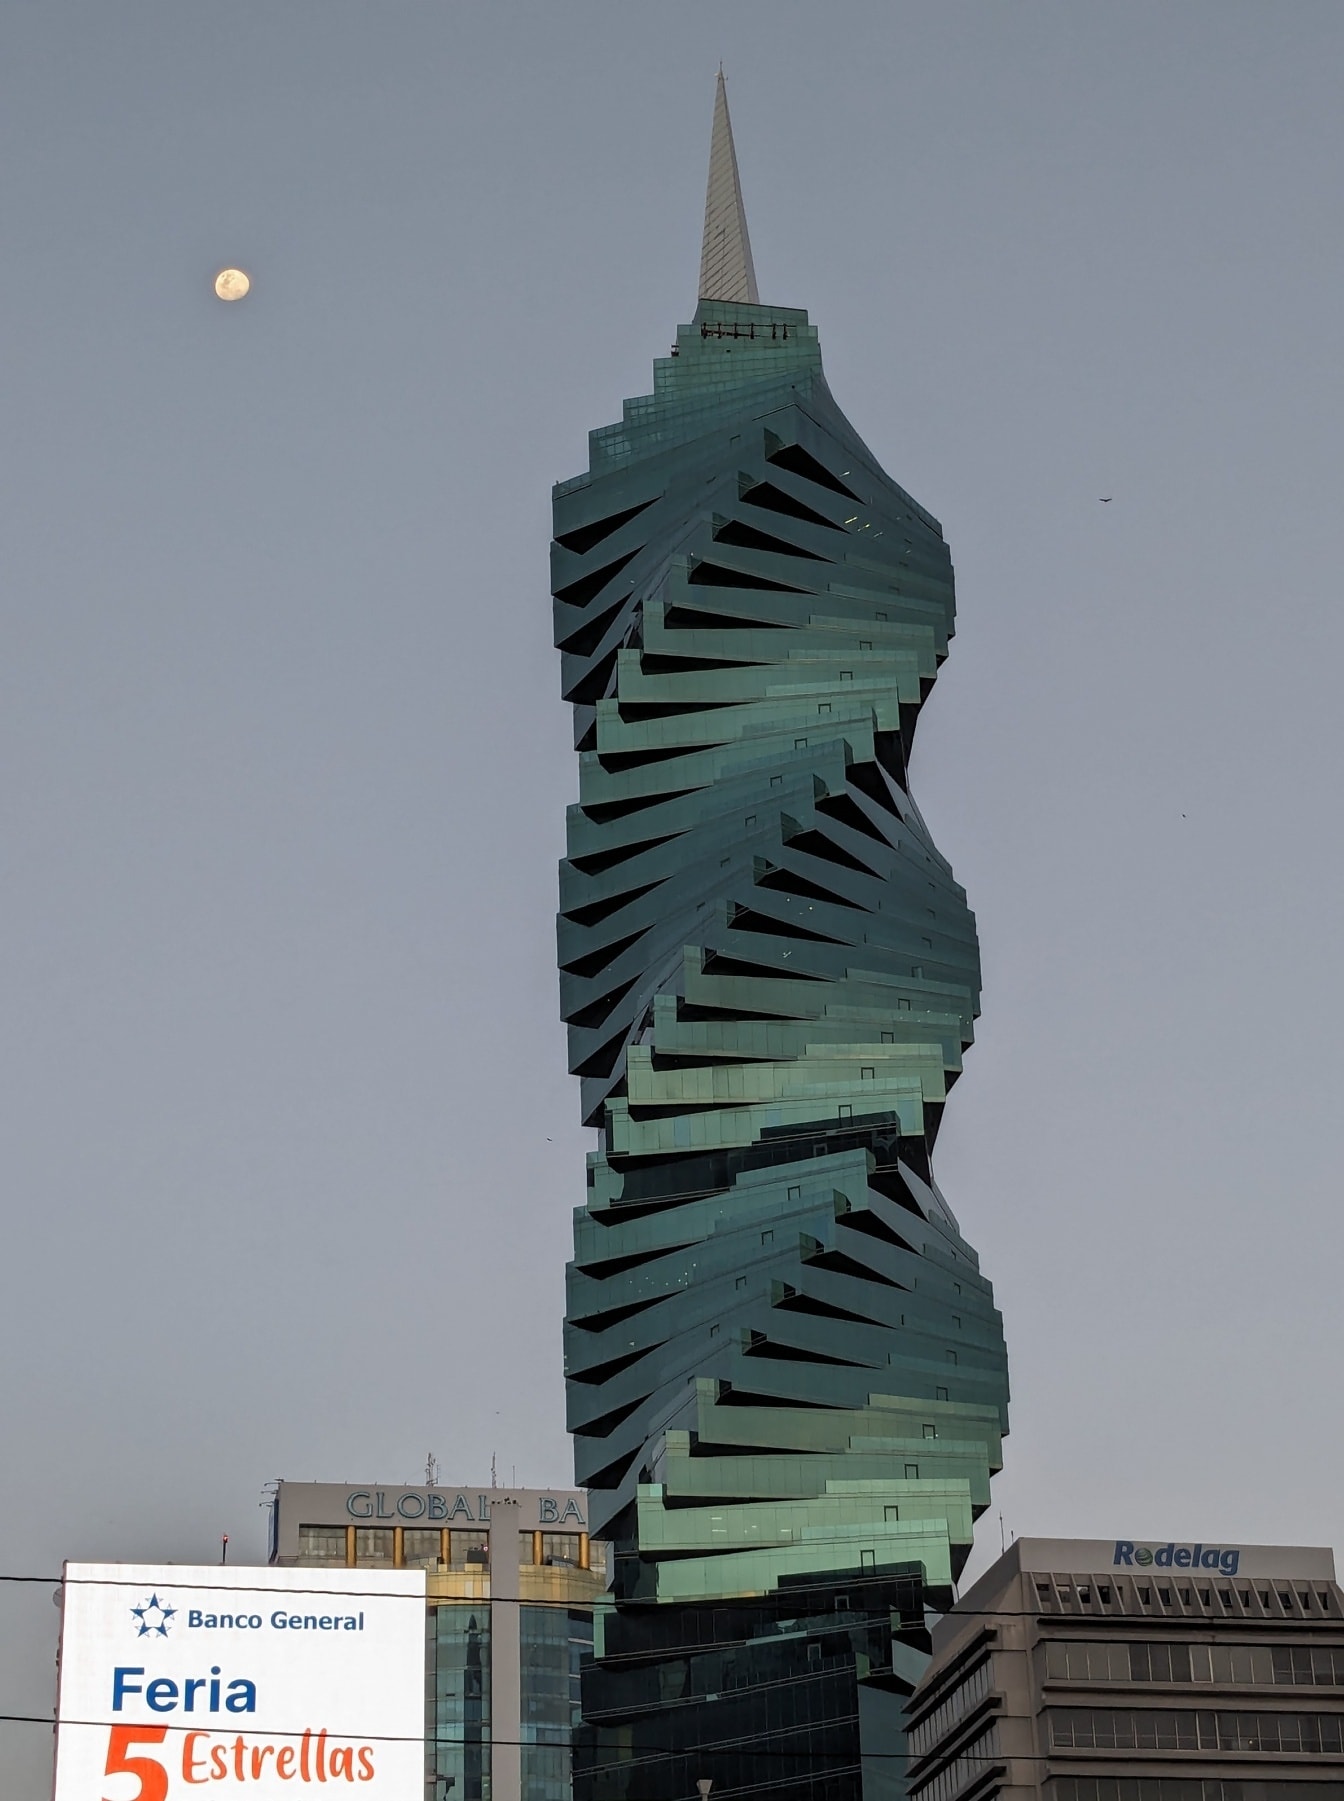 Ουρανοξύστης F&F Tower στην πόλη του Παναμά με σπειροειδή δομή